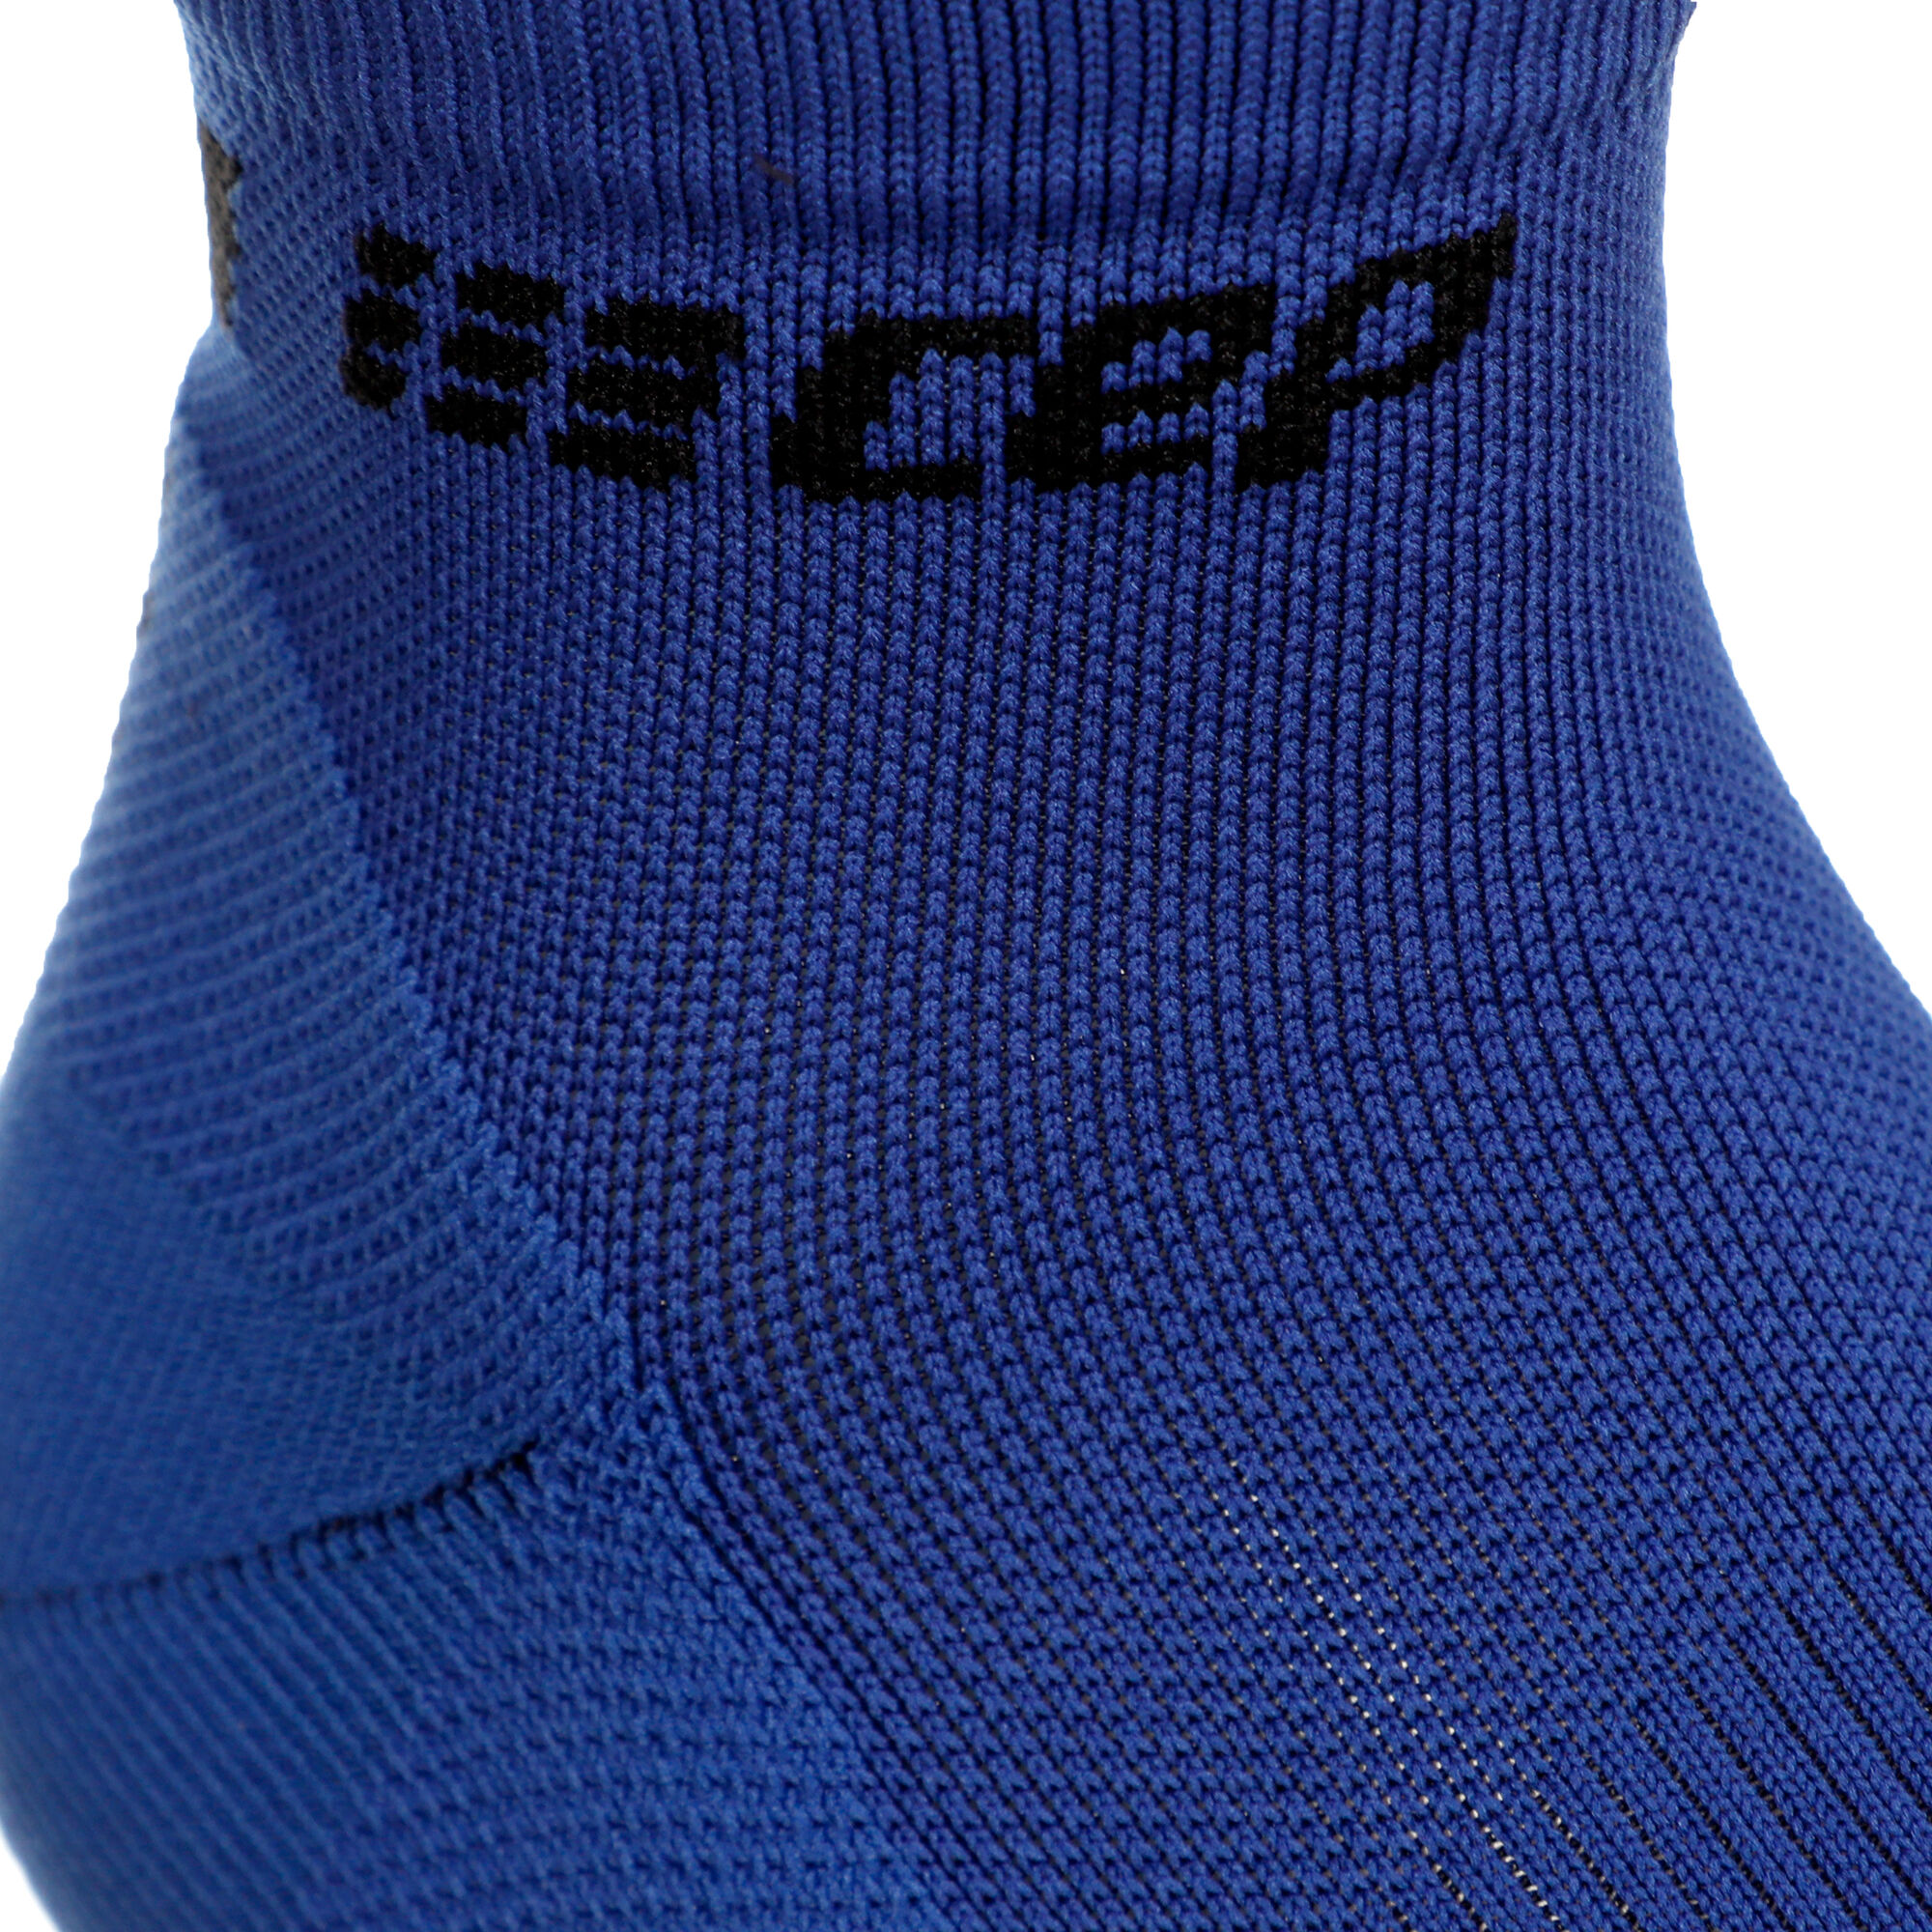 CEP Ultralight Low-Cut Socks Men